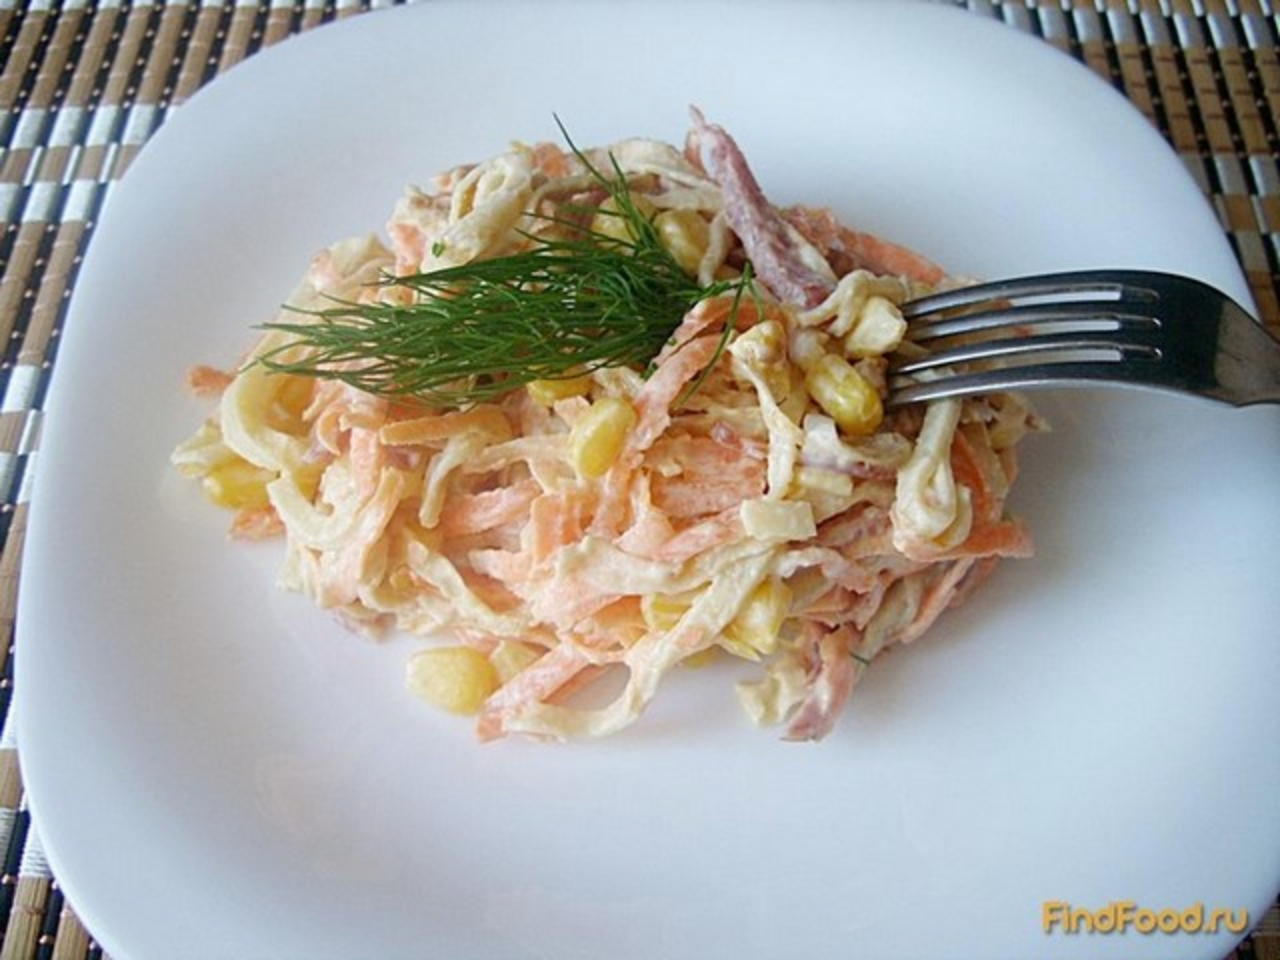 Салат с блинами и копченой курицей - питательная и вкусная закуска: рецепт с фото и видео